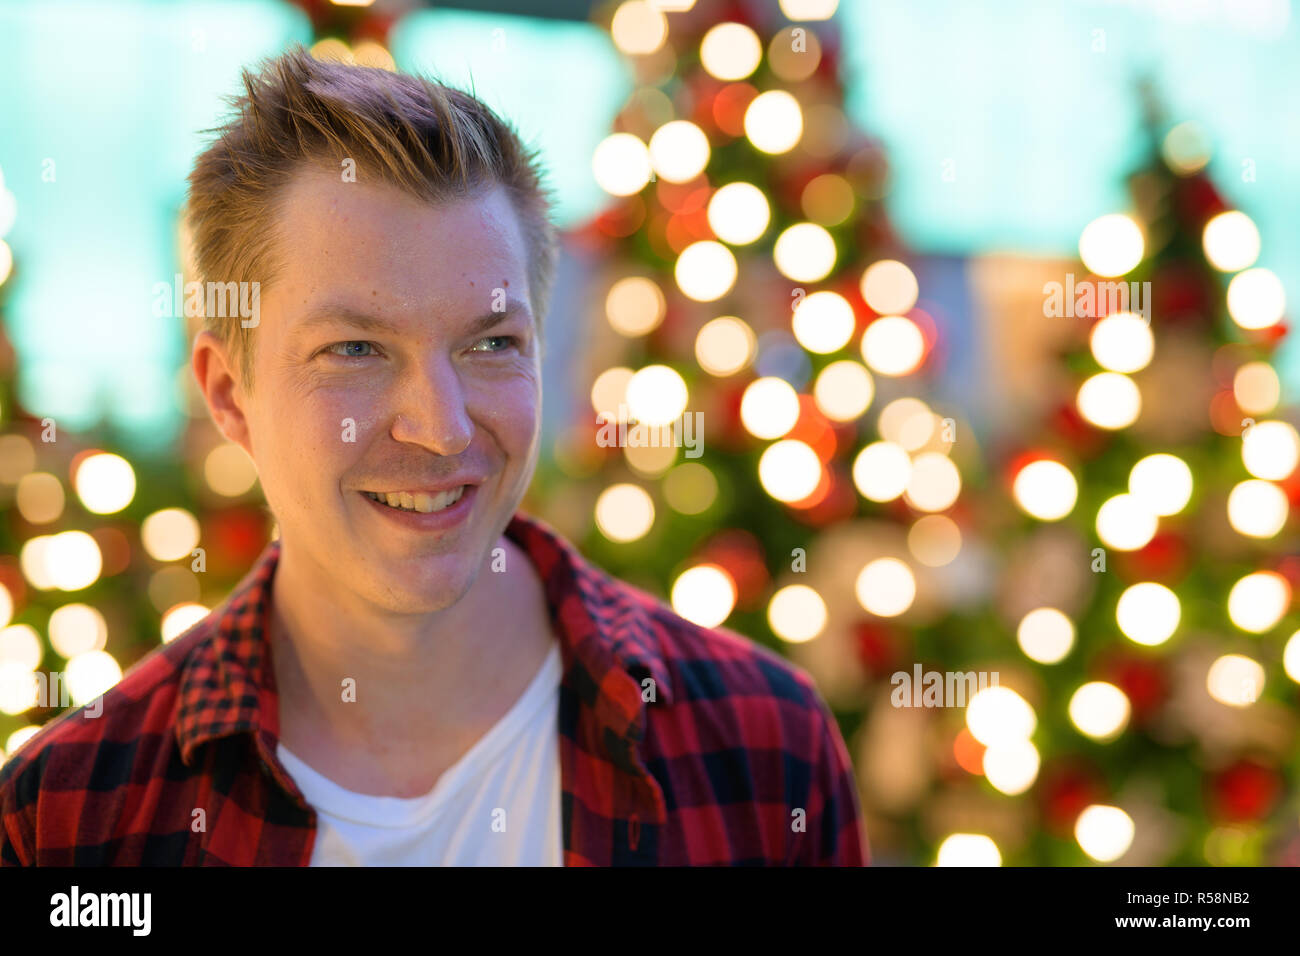 Junge glücklich lächelnd und Denken gegen Weihnachtsbäume im Freien Stockfoto